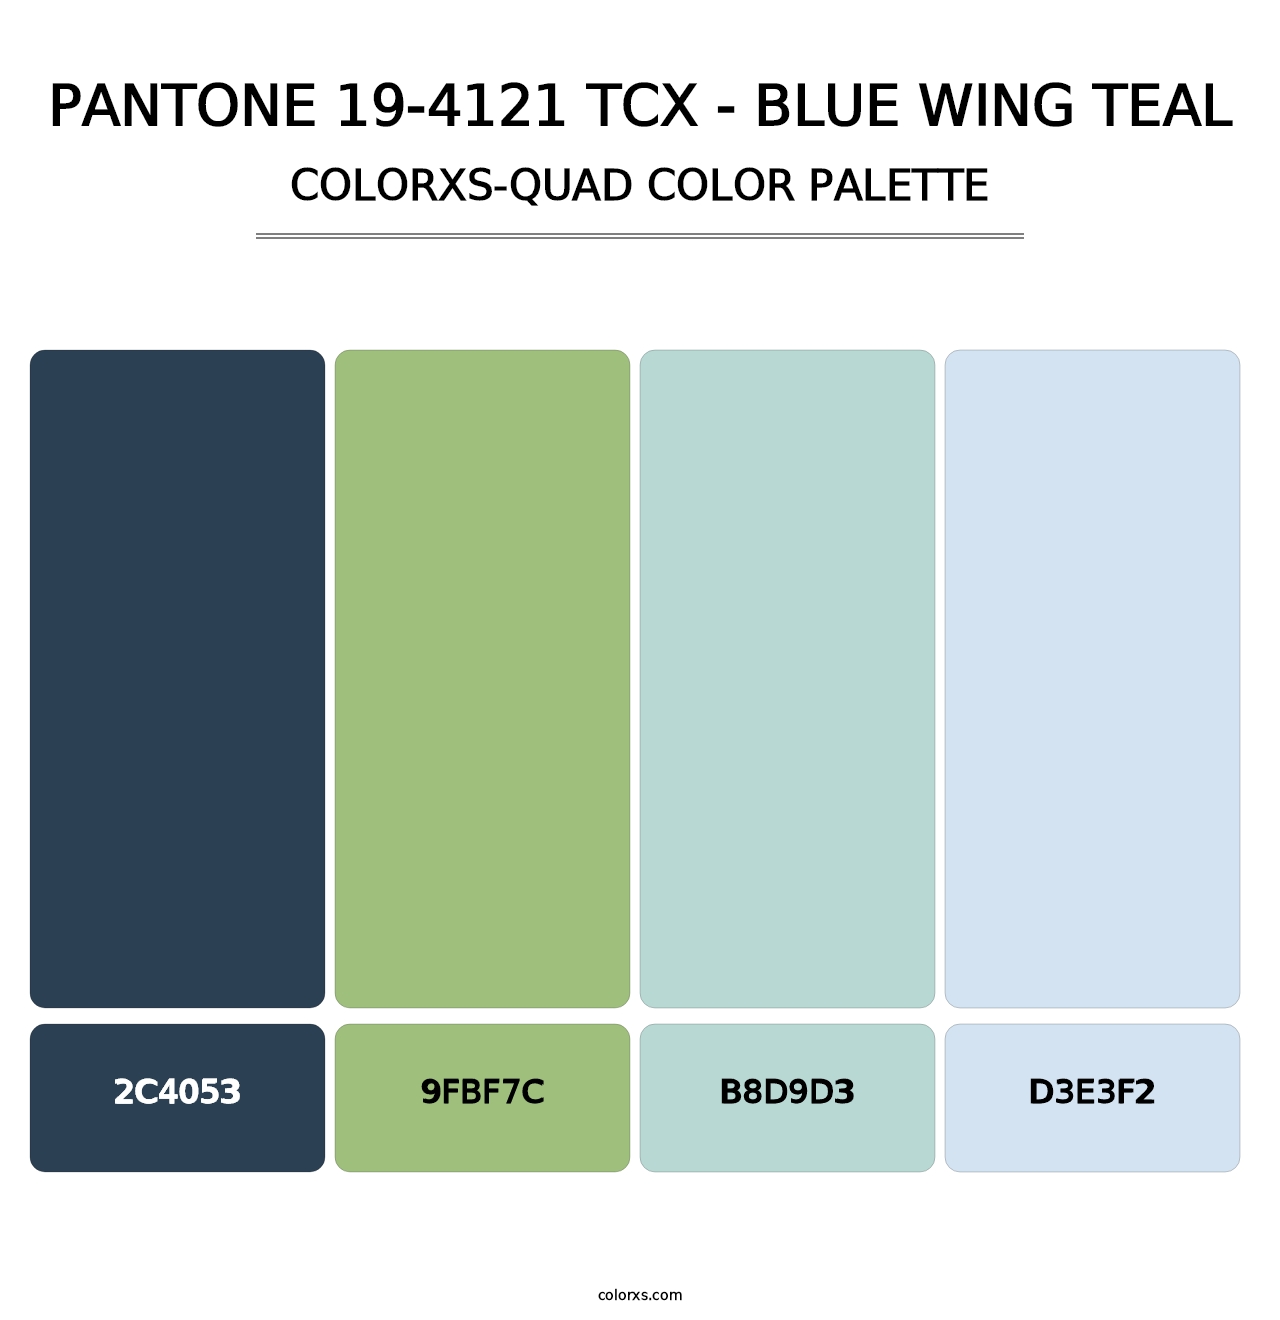 PANTONE 19-4121 TCX - Blue Wing Teal - Colorxs Quad Palette